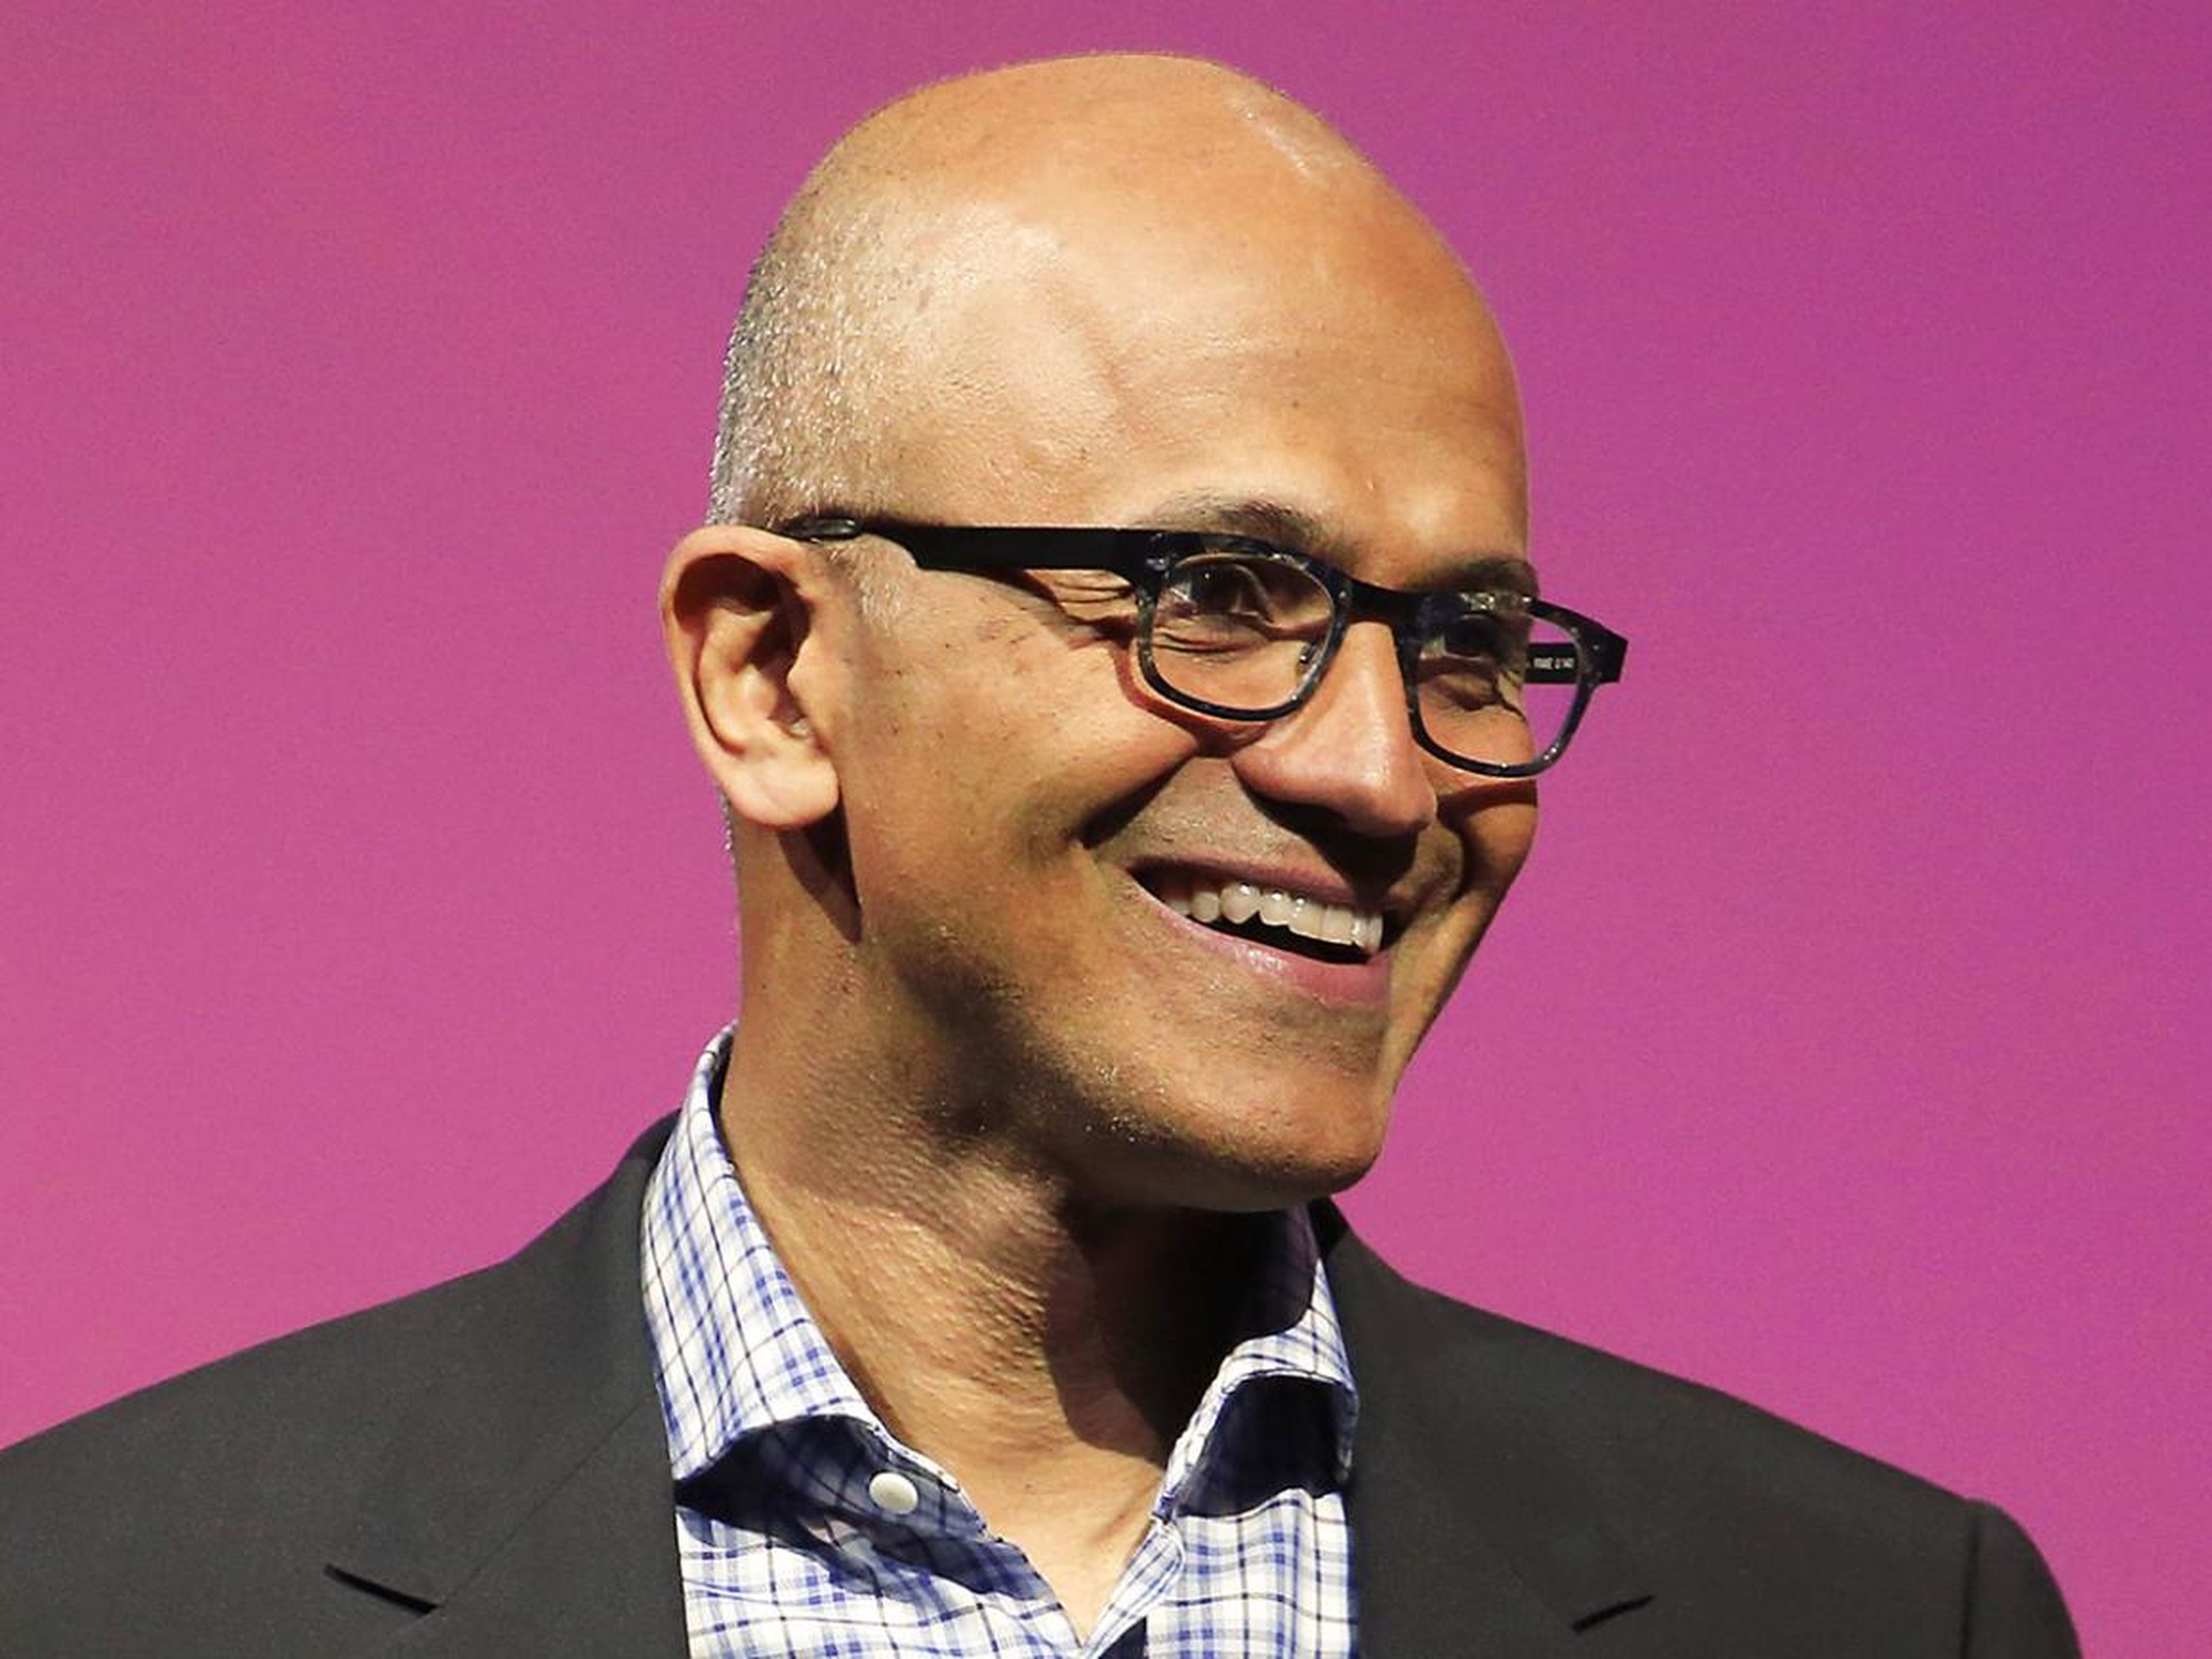 La directora general de Microsoft, Satya Nadella, asegura que el futuro de la compañía pasa por la inteligencia artificial y la realidad aumentada.